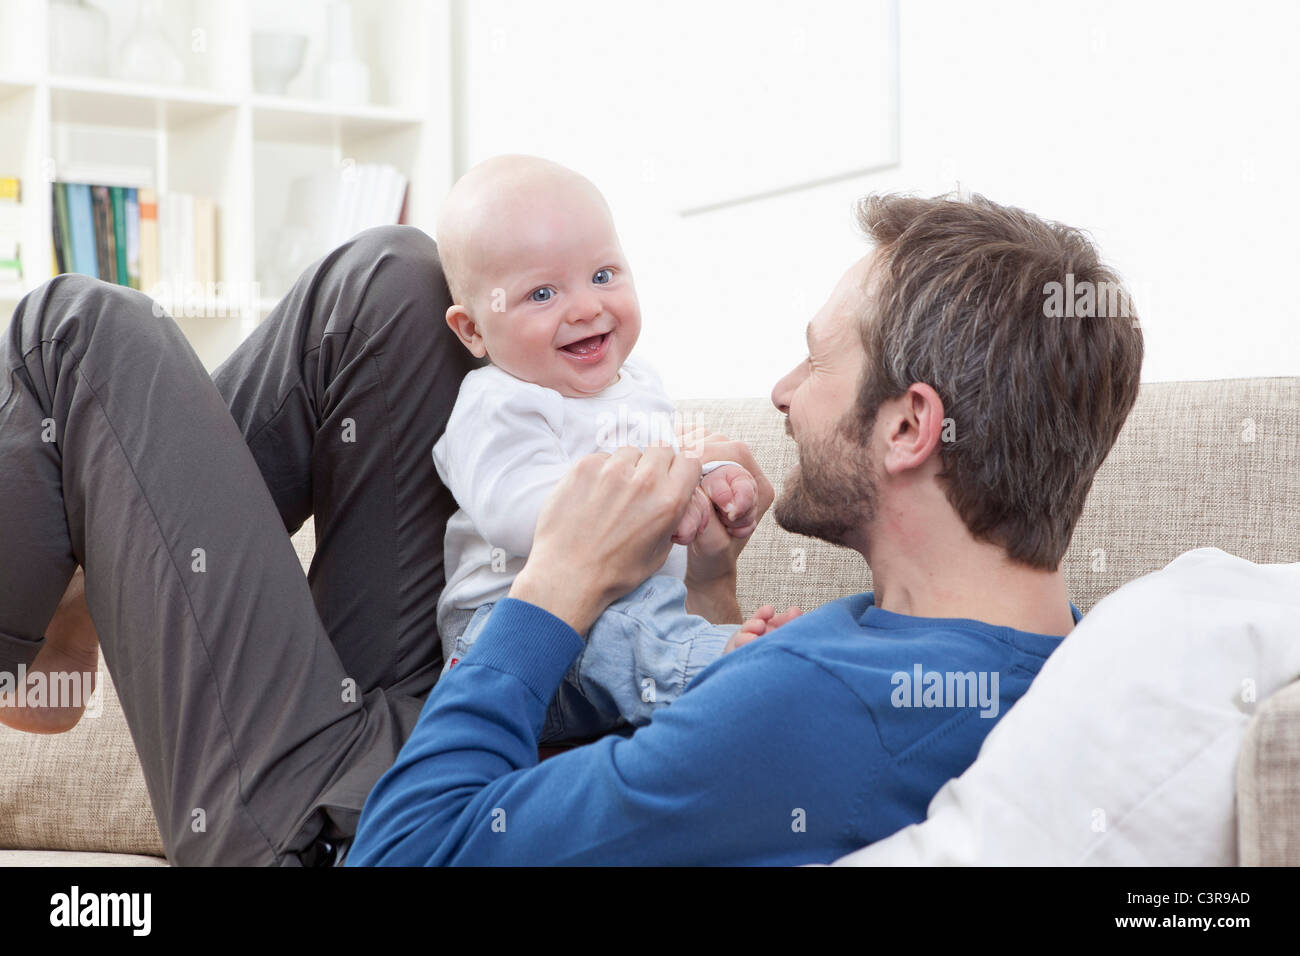 In Germania, in Baviera, Monaco di Baviera, padre e baby boy (6-11 mesi) avendo divertimento sul divano Foto Stock